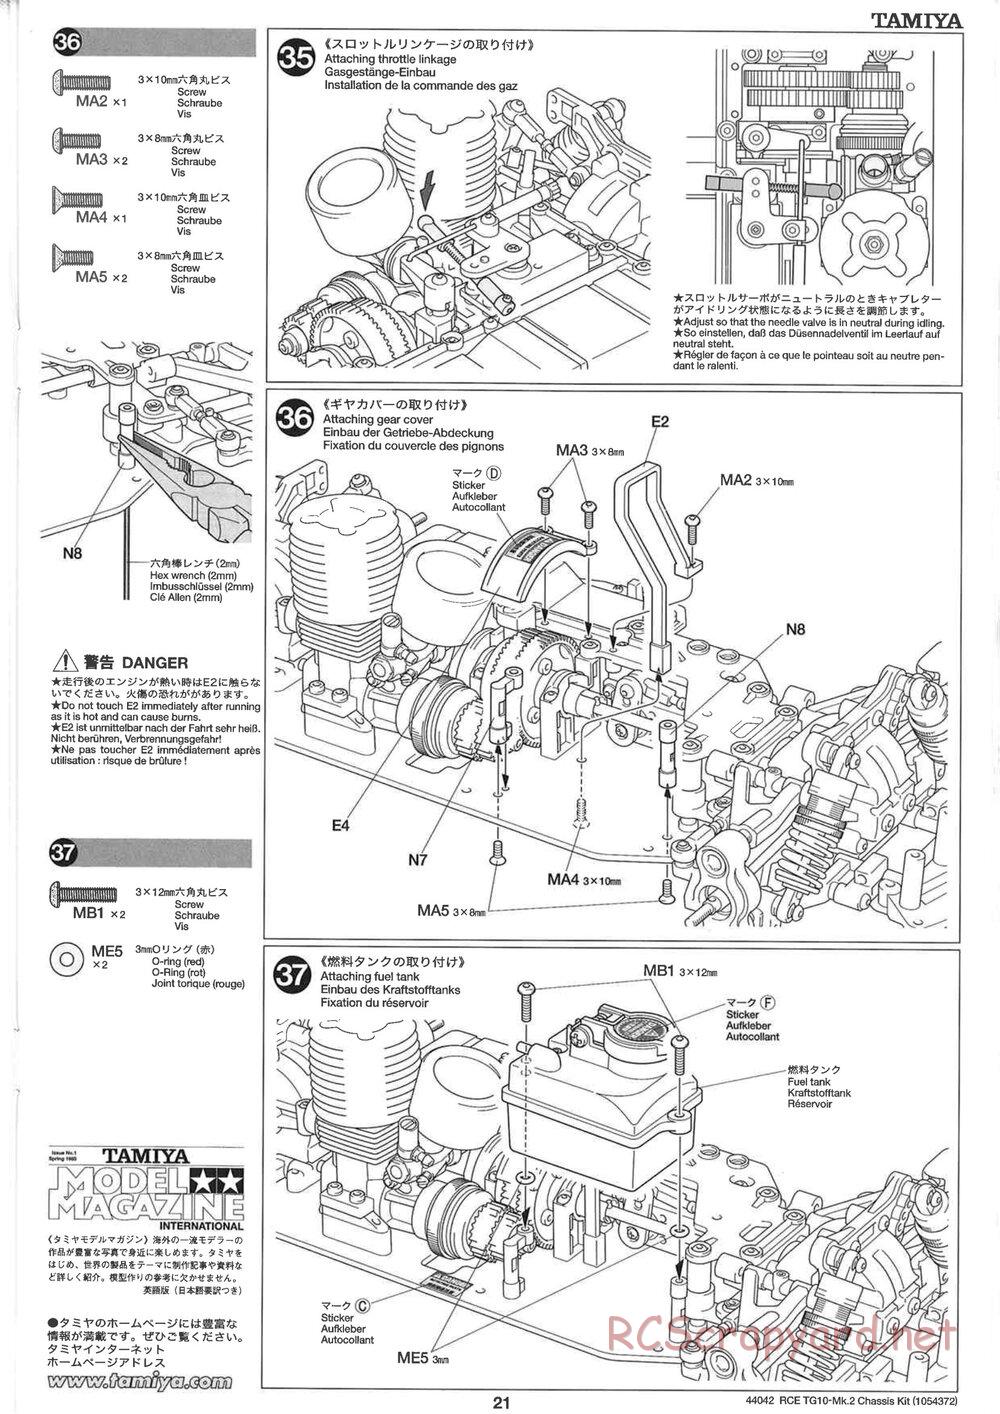 Tamiya - TG10 Mk.2 Chassis - Manual - Page 21